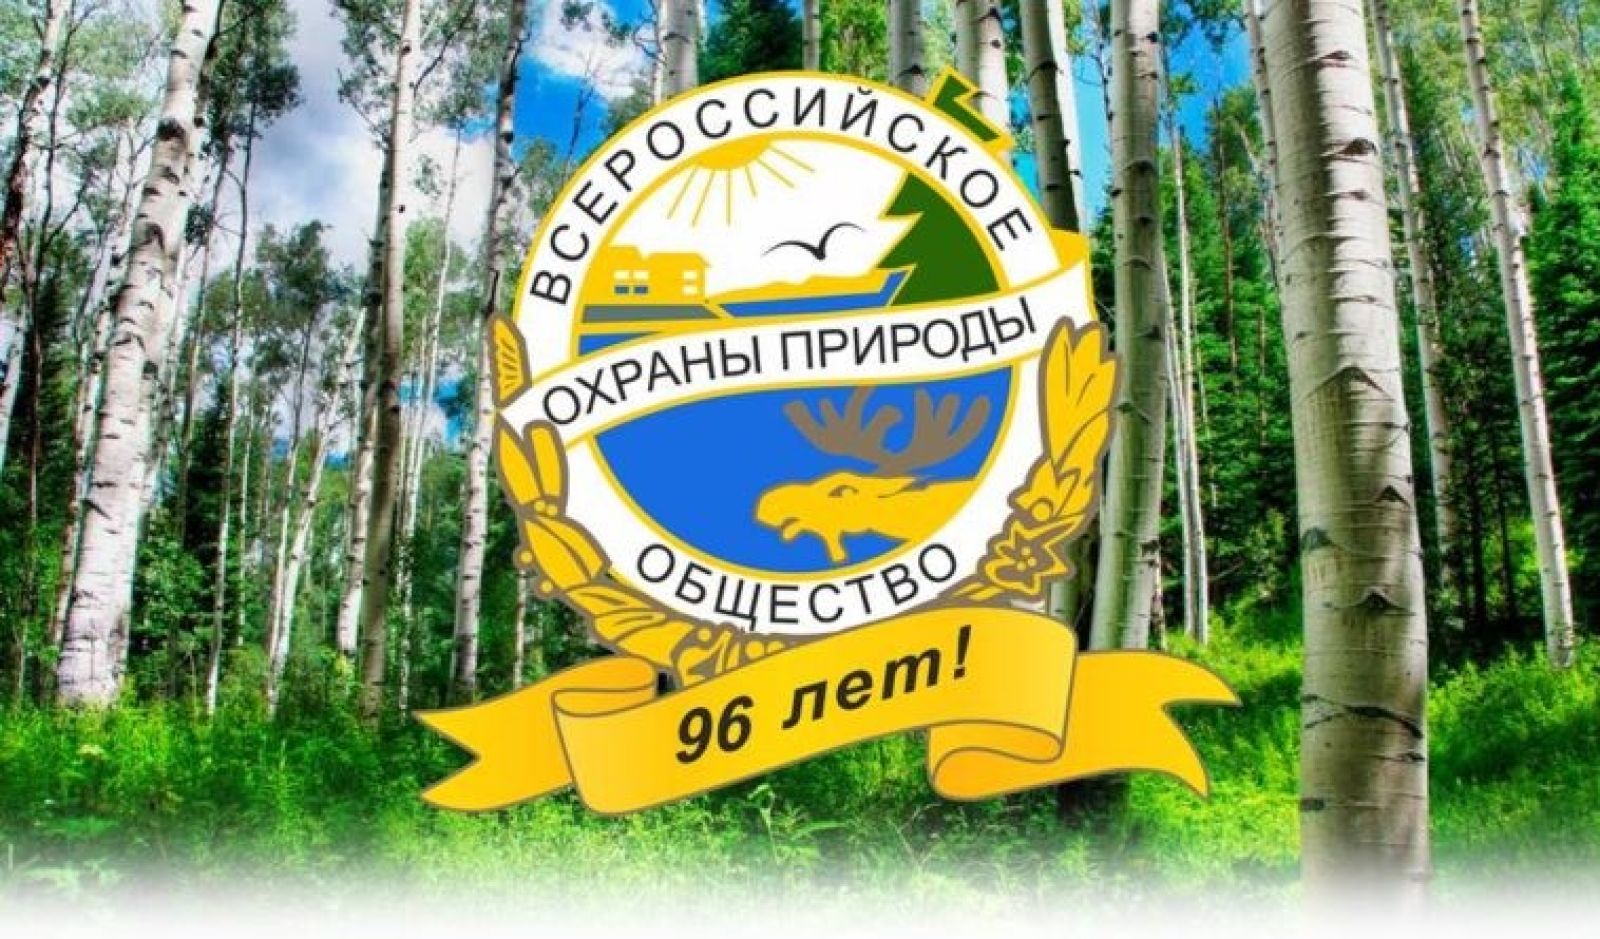 Всероссийское общество охраны природы (ВООП)